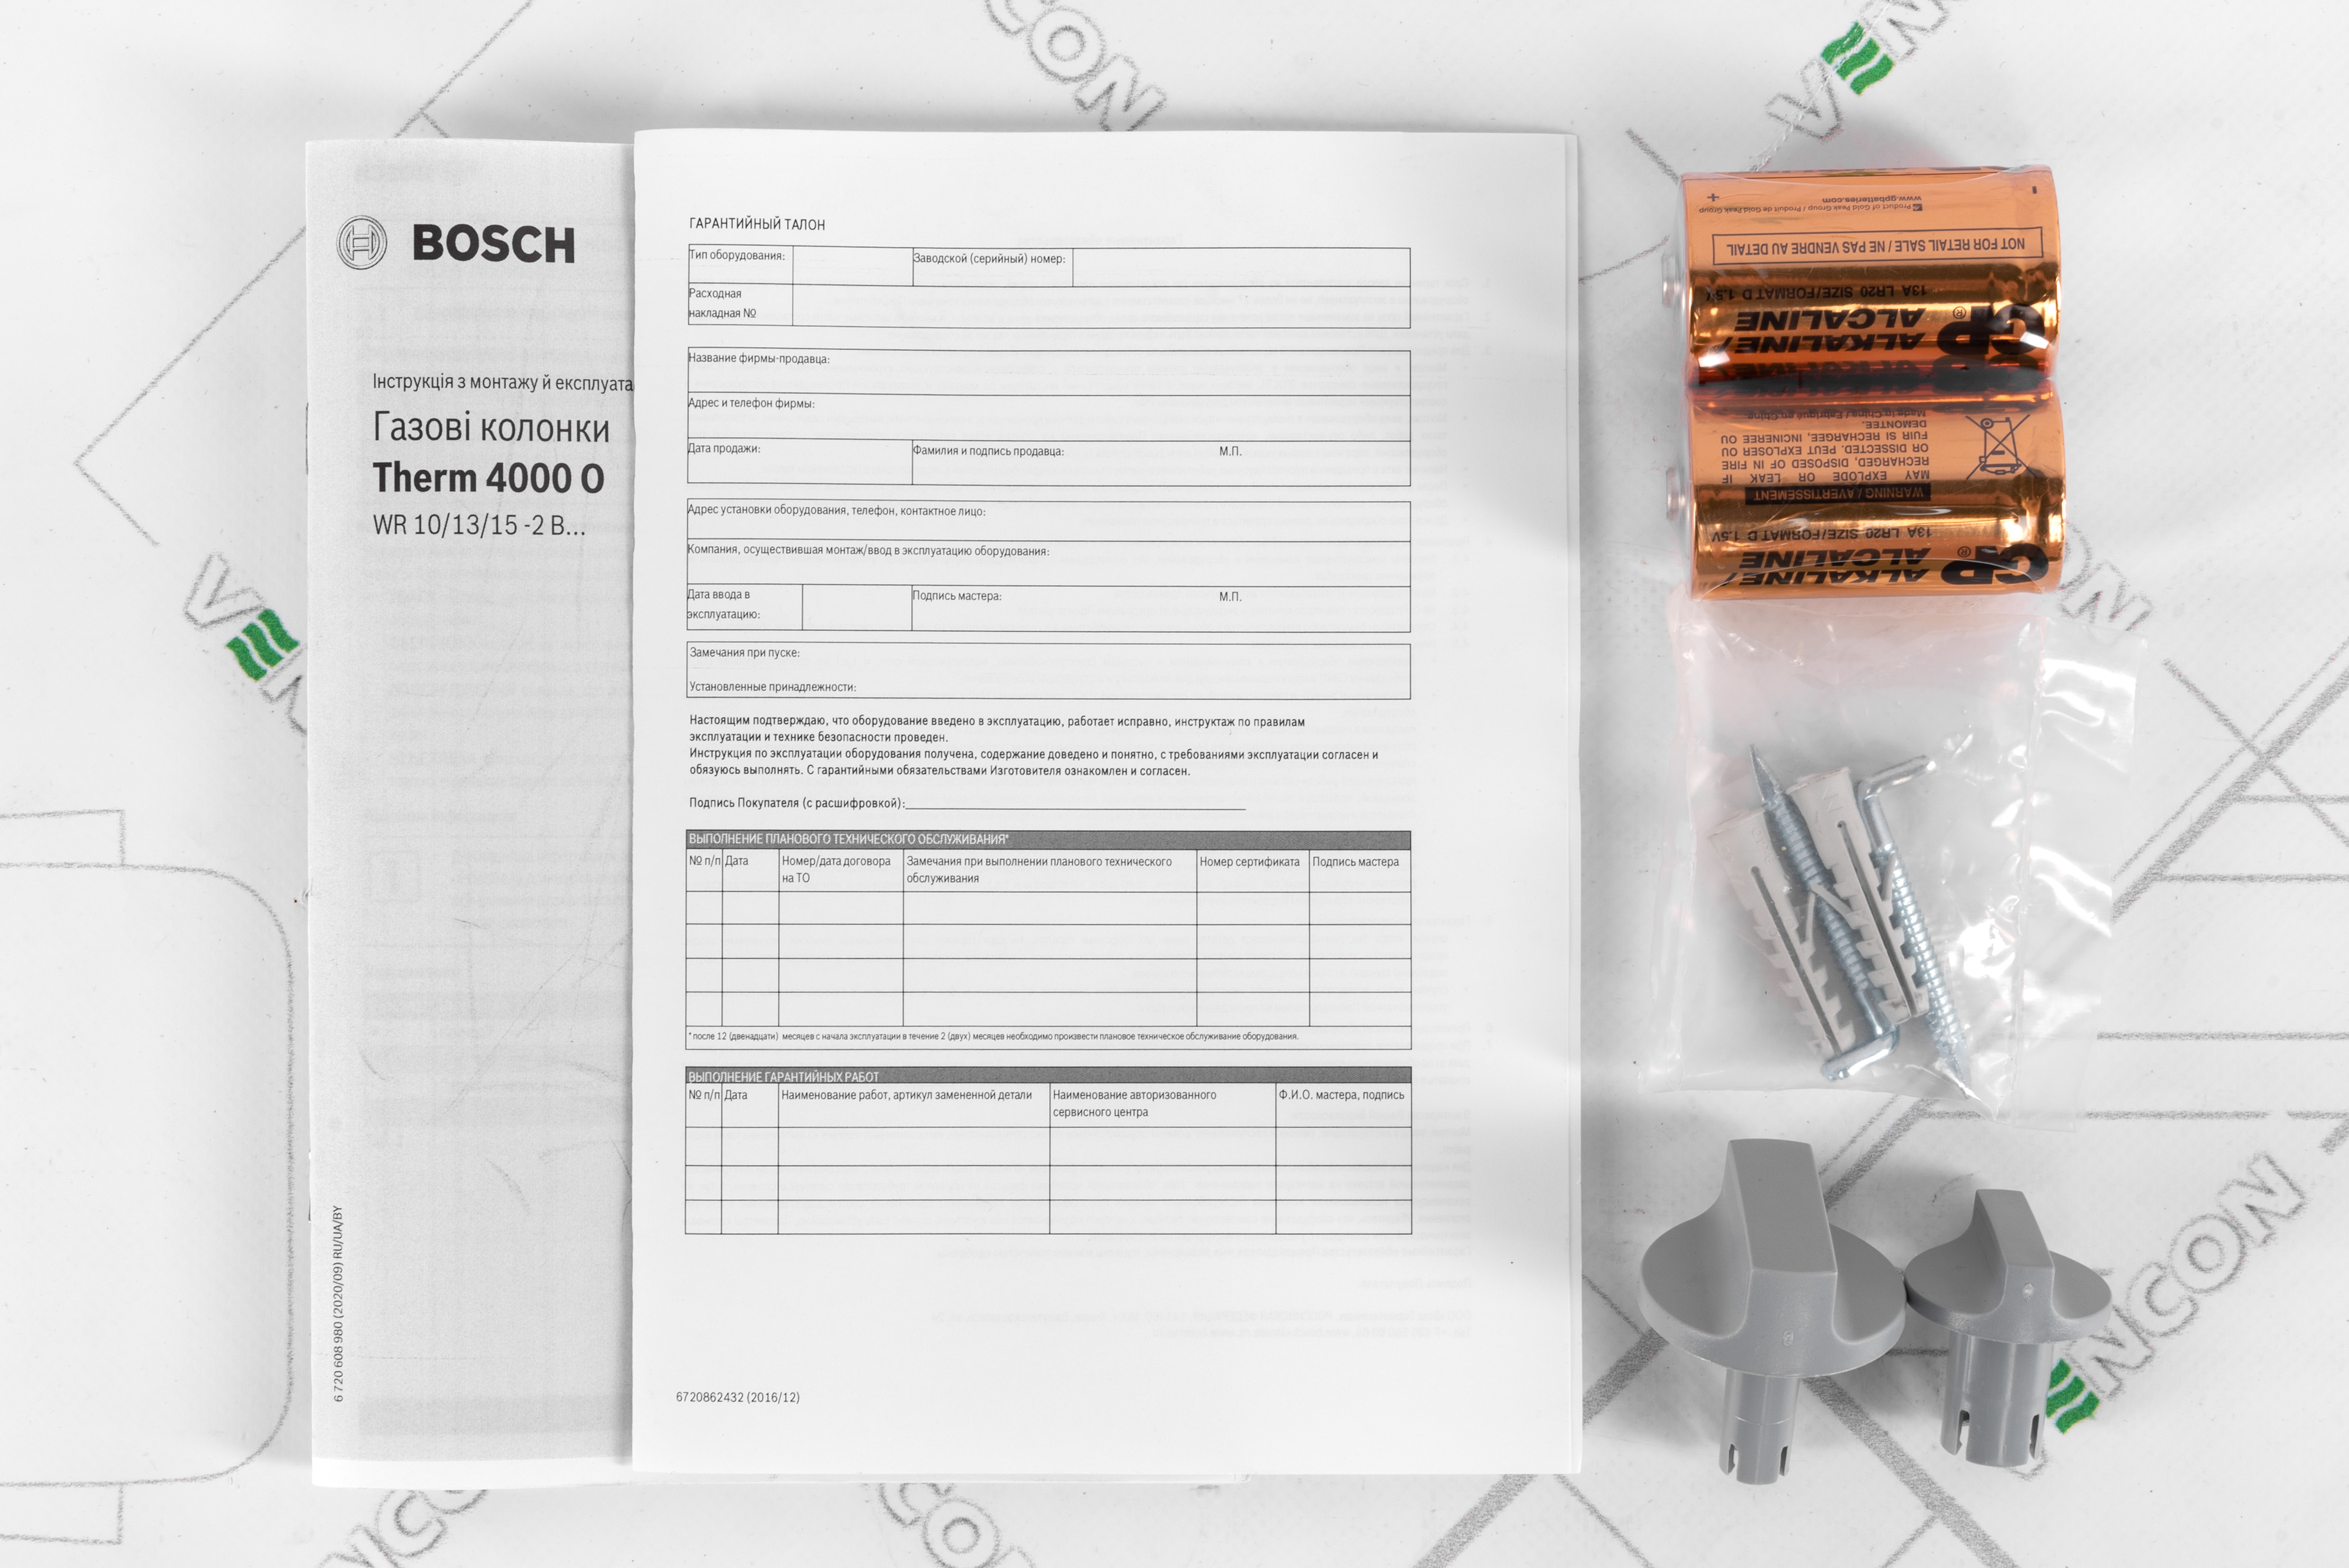 обзор товара Газовая колонка Bosch Therm 4000 O WR 10-2 B (7701331617) - фотография 12